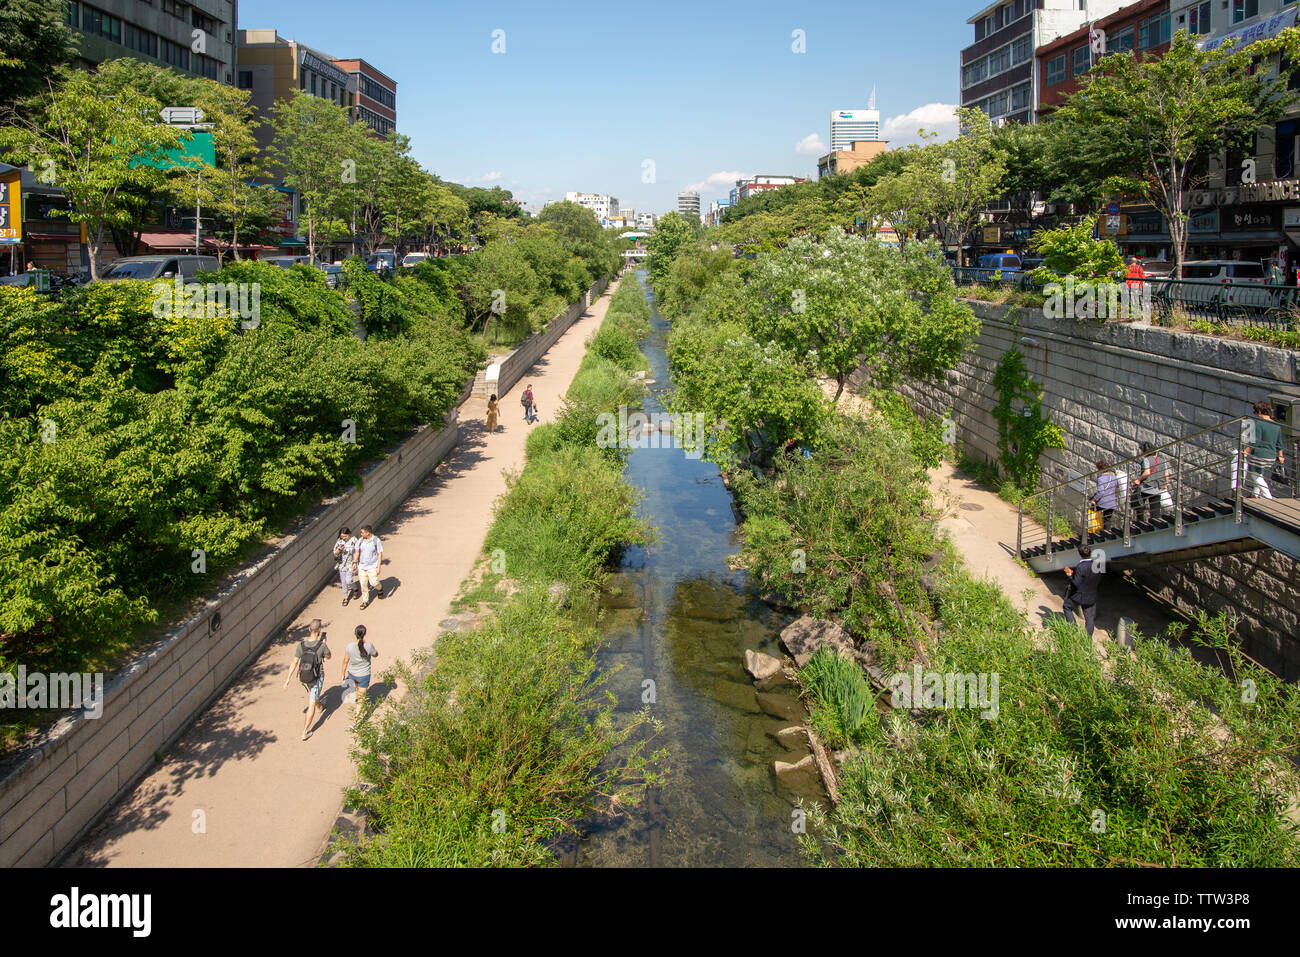 Séoul, Corée du Sud - 31 MAI 2019 : les gens marchent sur des chemins le long de la Cheonggyecheon Stream Banque D'Images